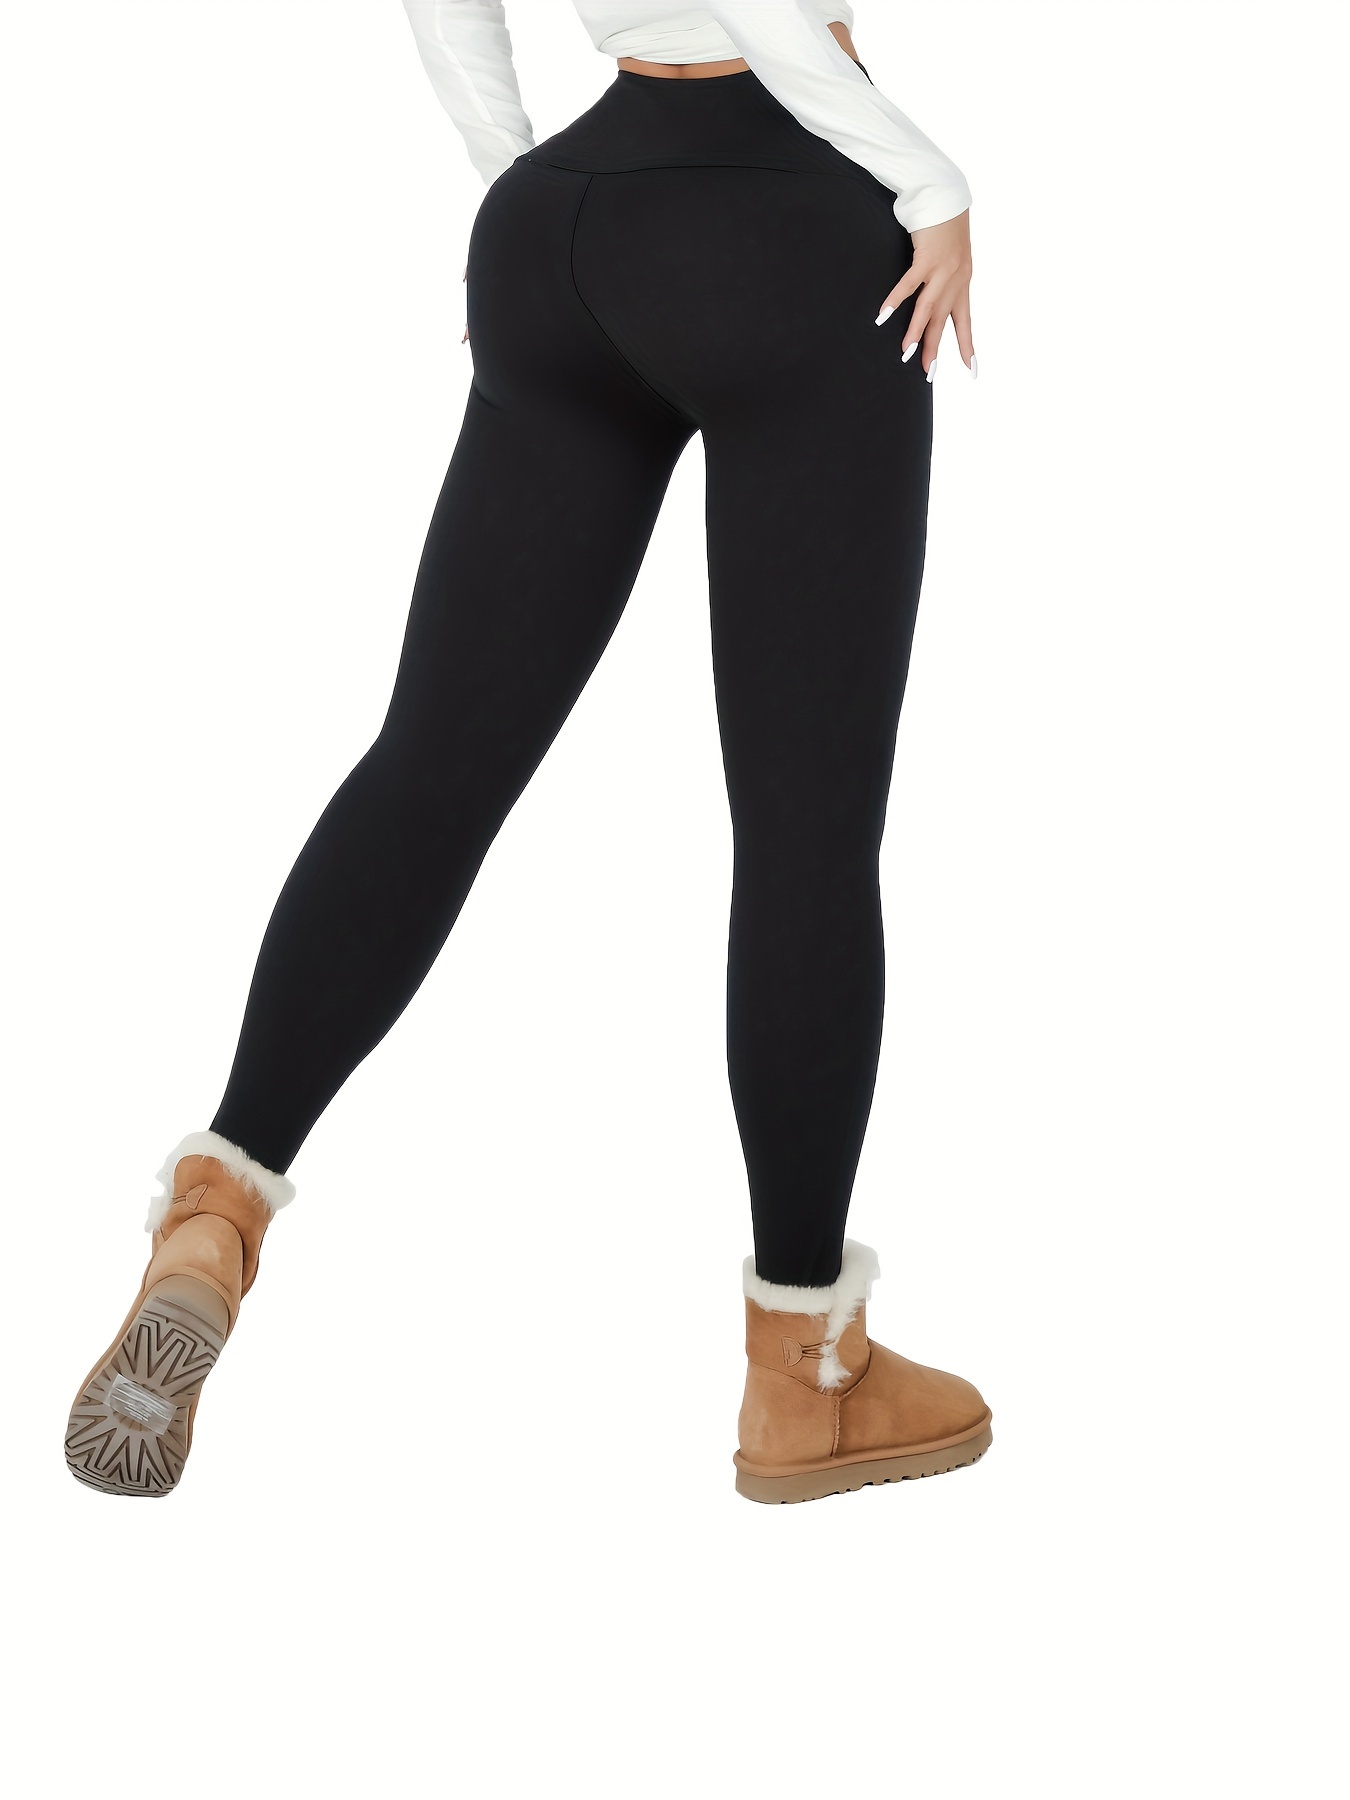 Women's Thermal Fleece Lined High Waist Yoga Leggings Pocket